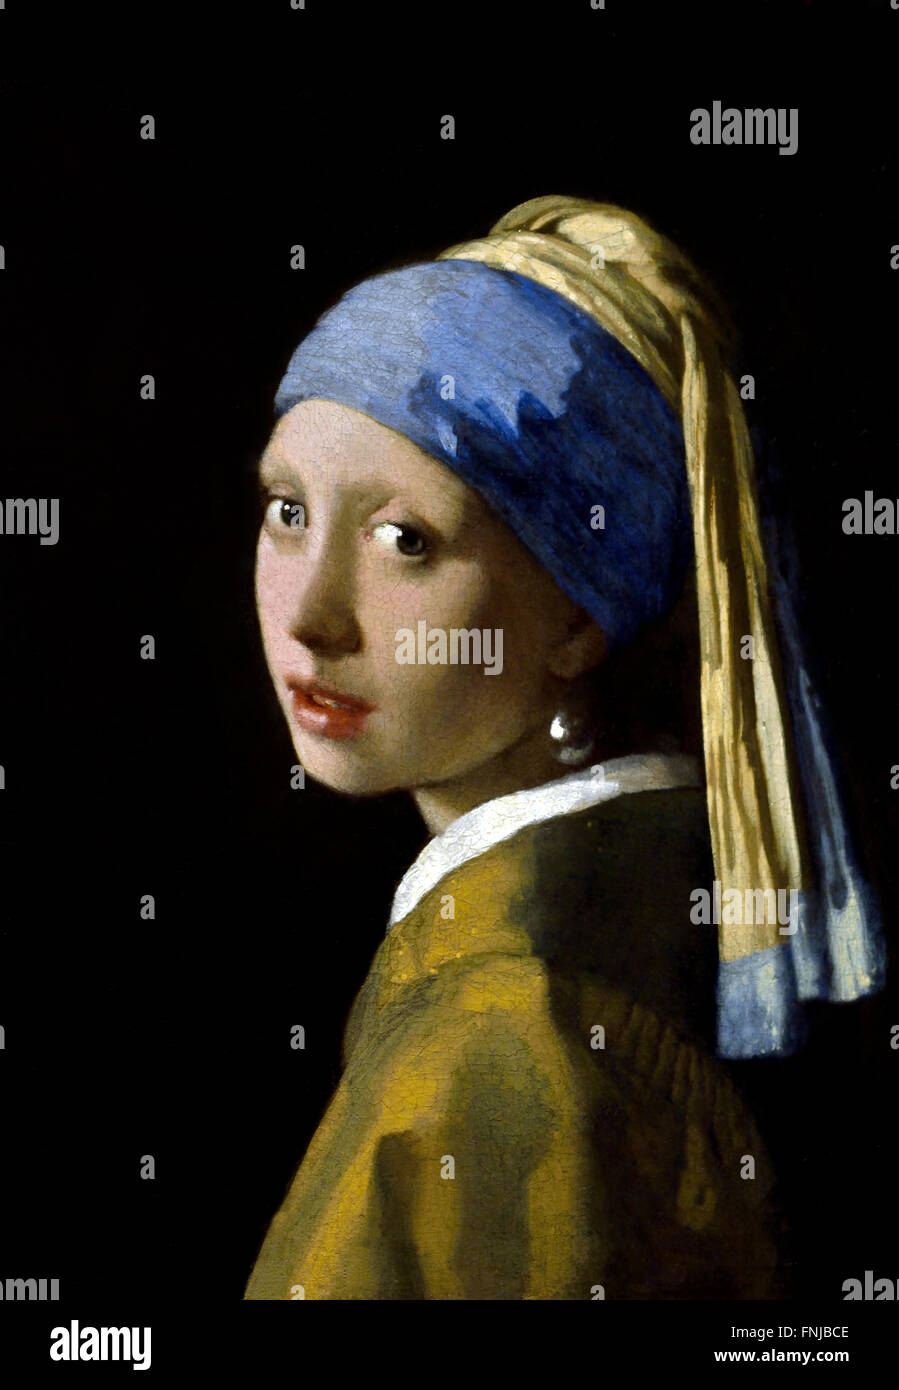 Mädchen mit Perlenohrring 1665 Johannes Vermeer oder Jan Vermeer 1632 - 1675 Niederländische Niederlande ( niederländischer Maler im Goldenen Zeitalter, einer der größten Maler im 17. Jahrhundert. Bevorzugte zeitlose, gedämpfte Momente, bleibt rätselhaft, unnachahmliches Farbschema und verwirrender Lichtinhalt) Stockfoto